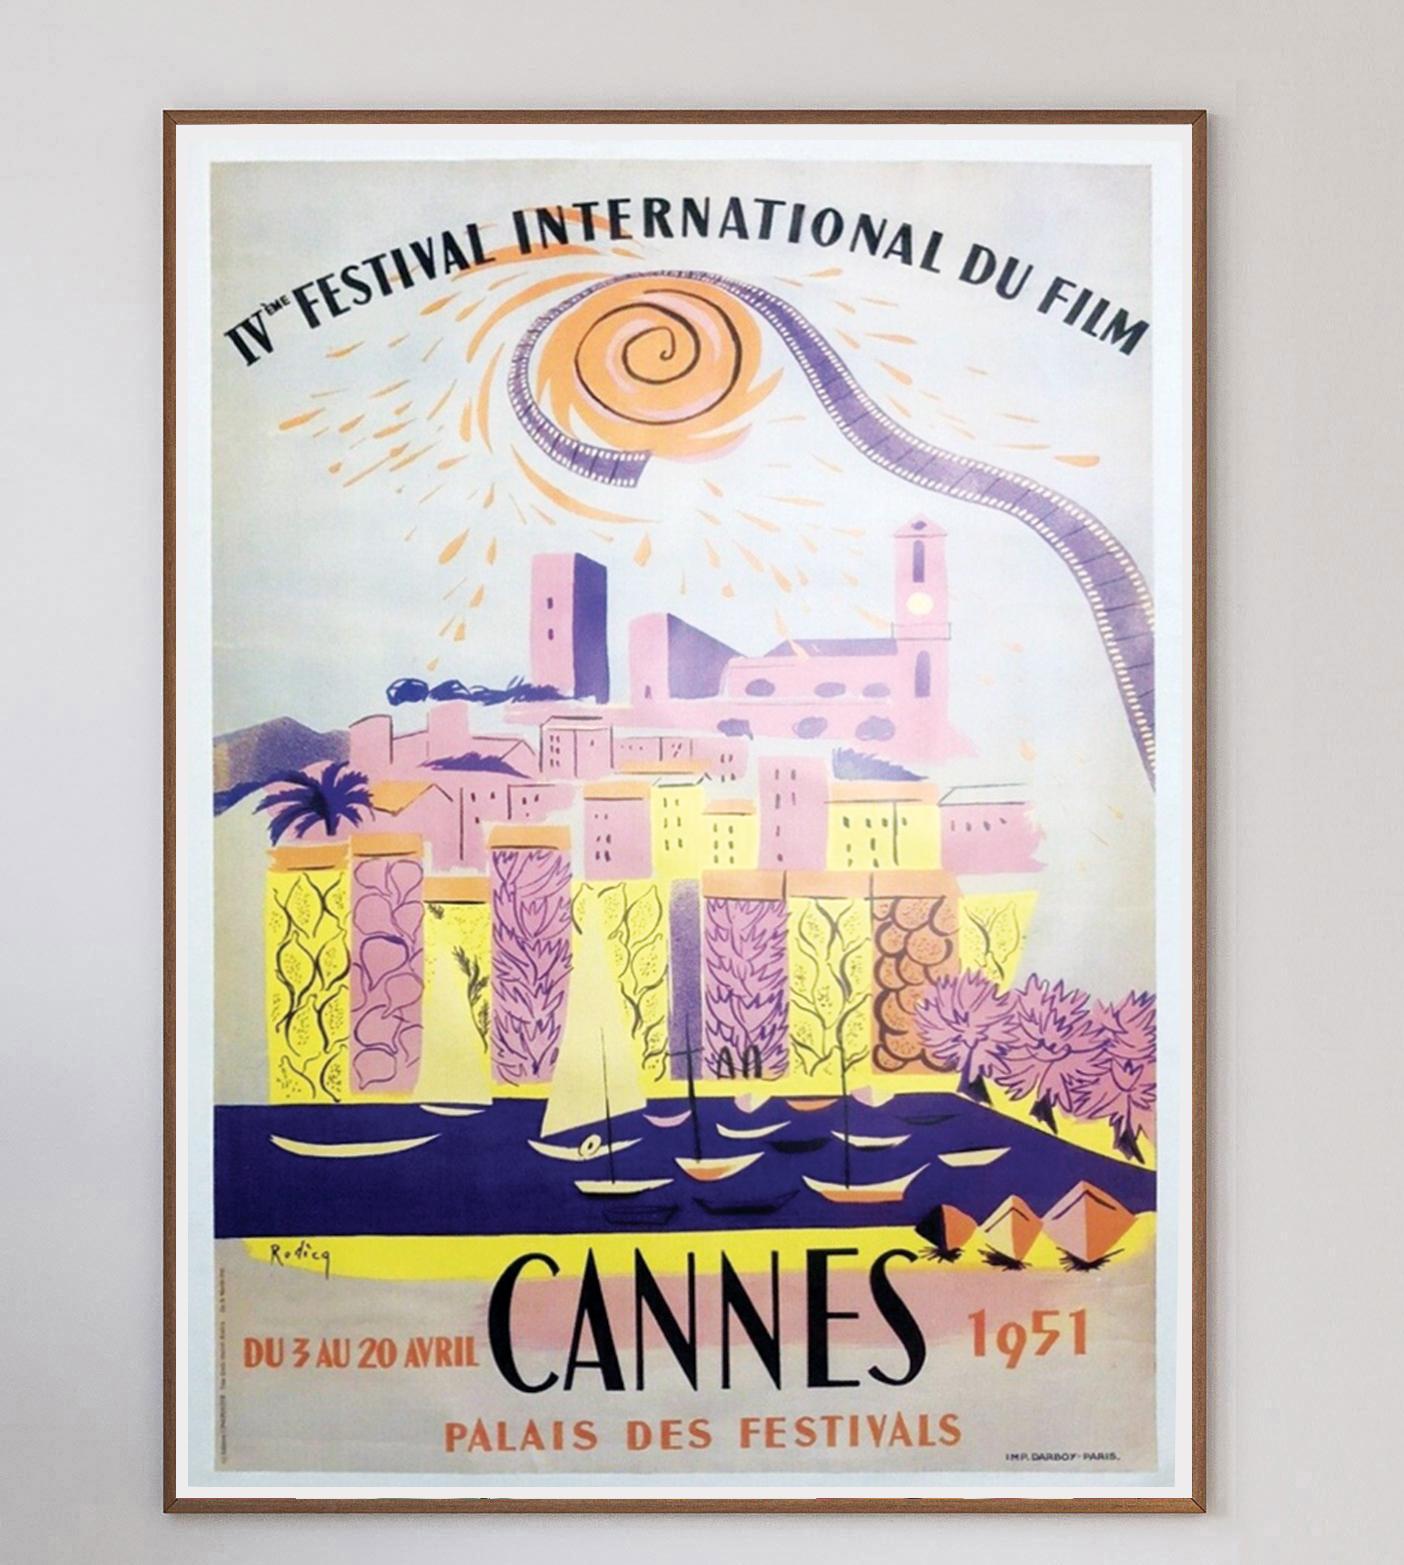 Cette affiche est celle du 4e Festival international du film de Cannes, Festival de 1951, qui s'est tenu du 3 au 20 avril à Cannes, en France. Ce magnifique design aux couleurs vives est illustré par des œuvres d'A&M. Rodicq.

Il s'agissait du